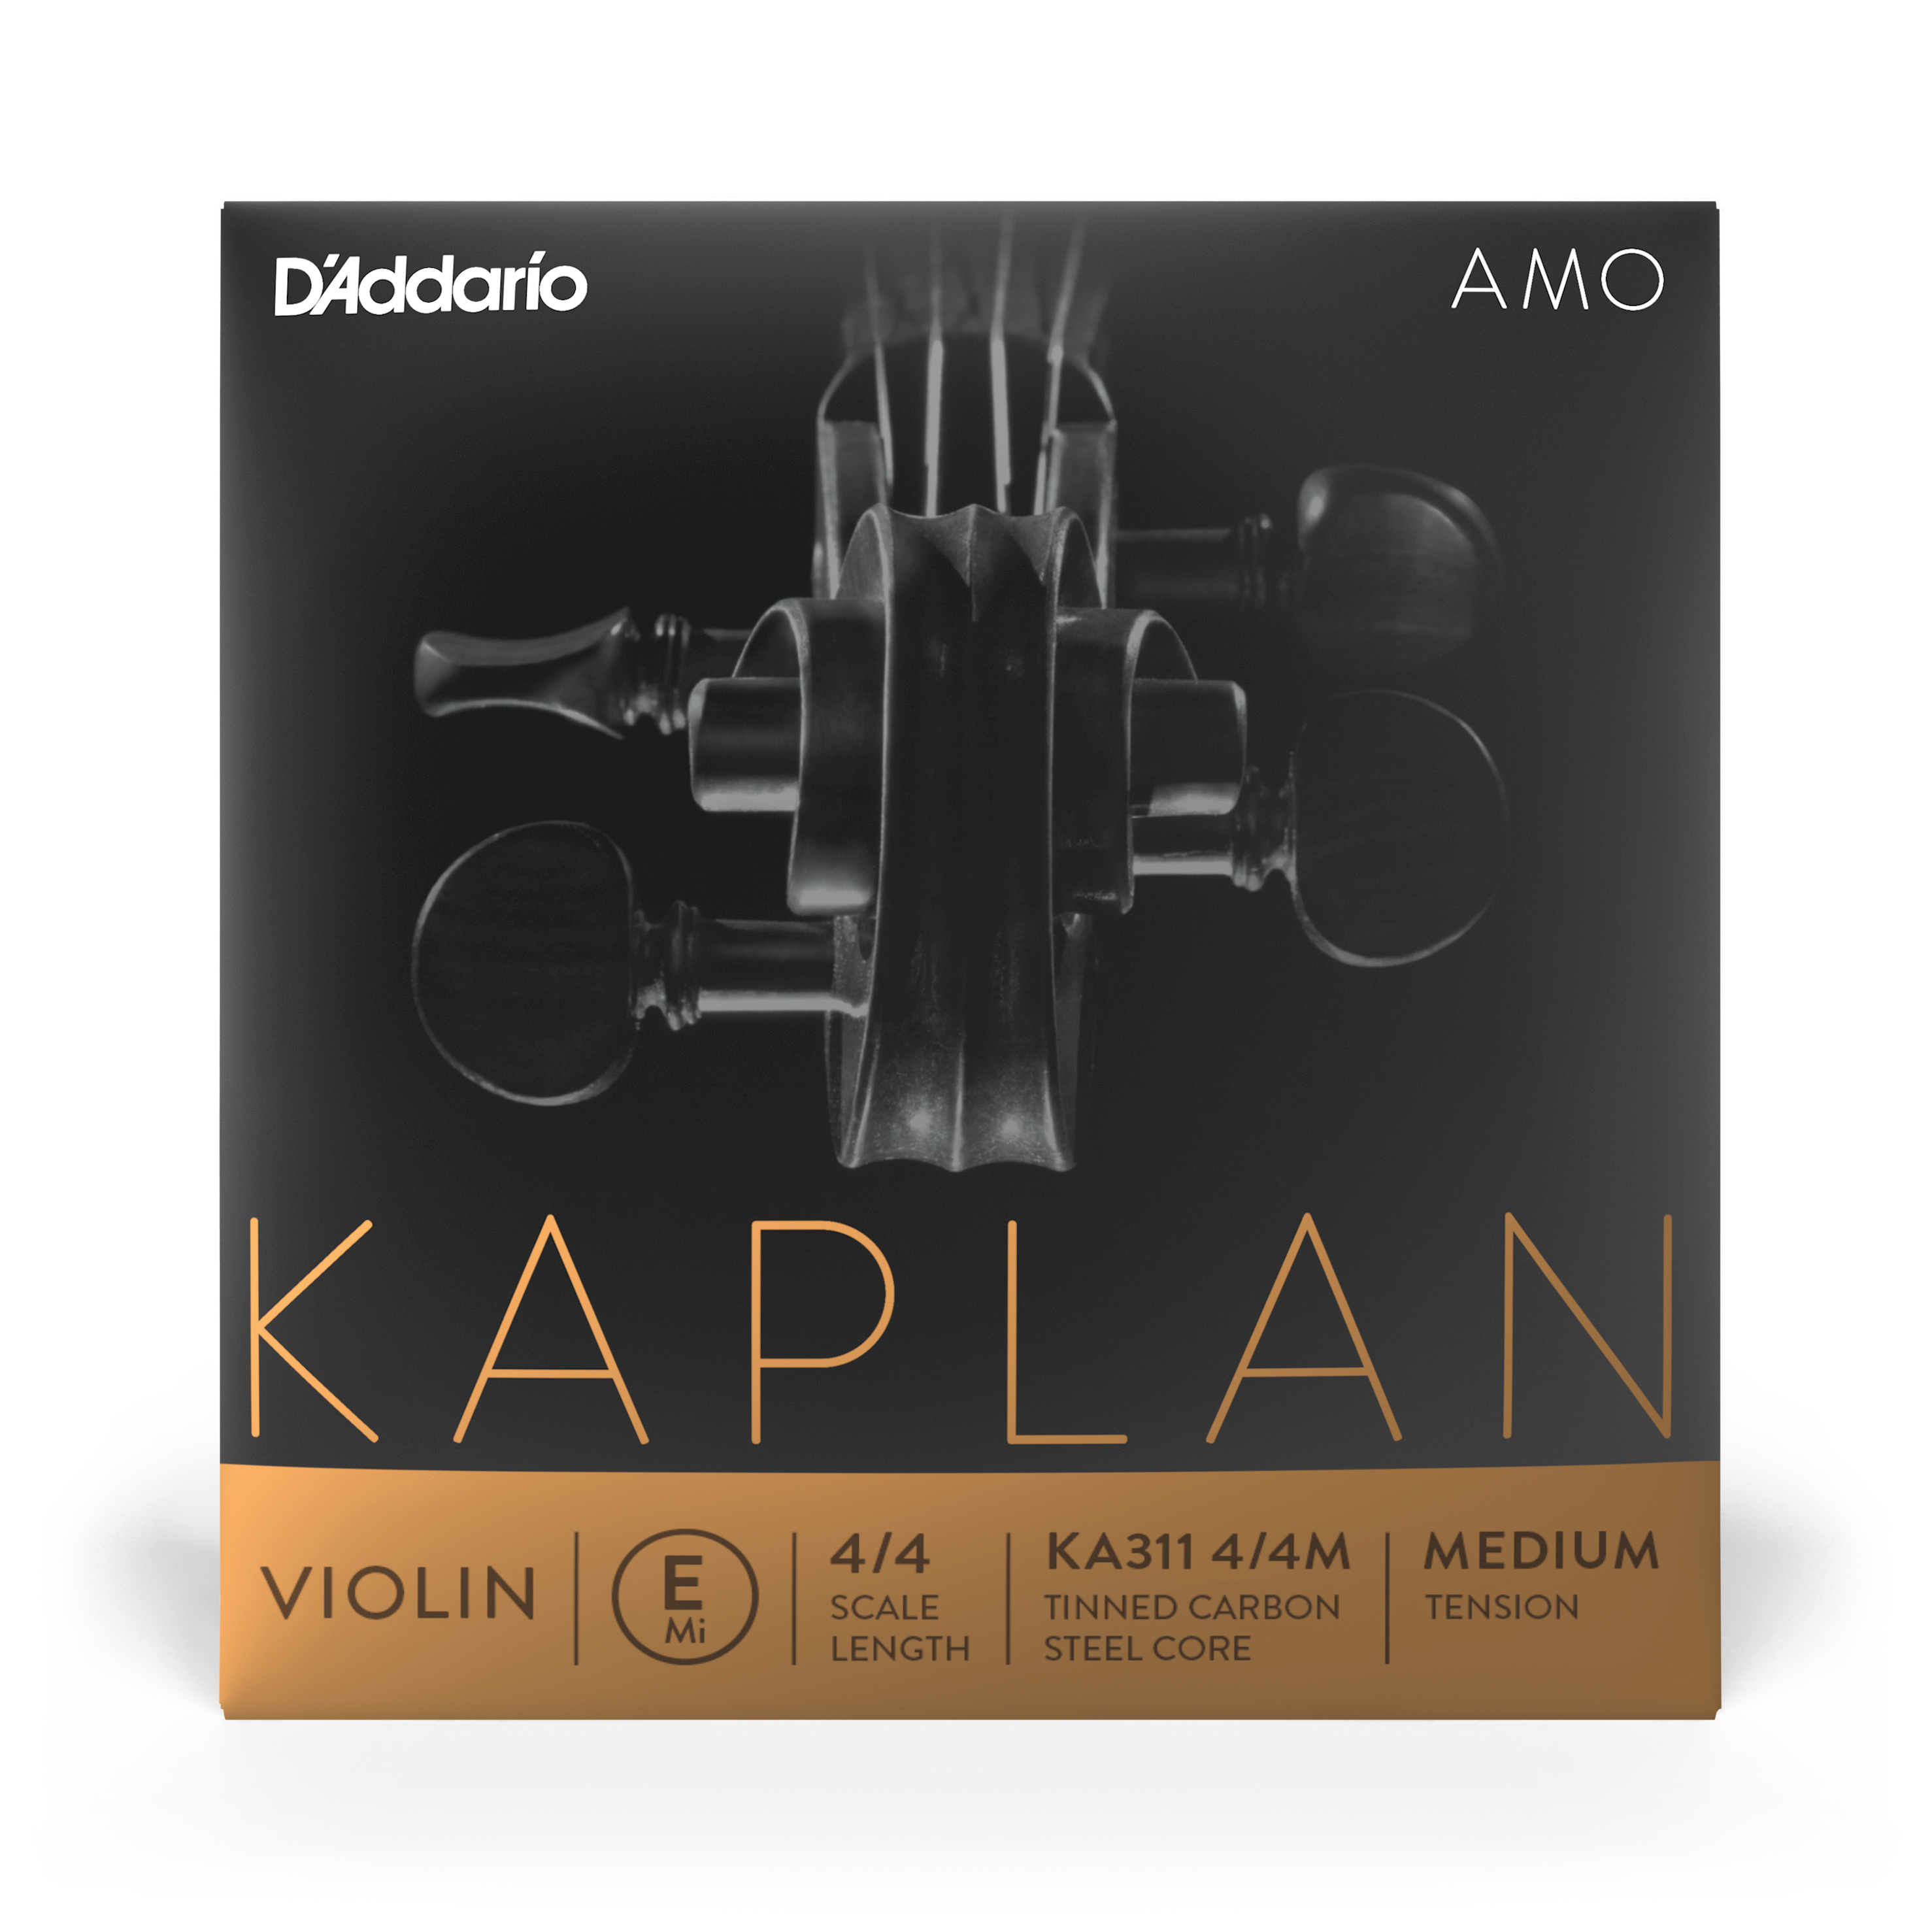 Daddario orchestral it Ka311 4/4m d'addario kaplan amo - singola corda mi per violino, scala 4/4, tensione media